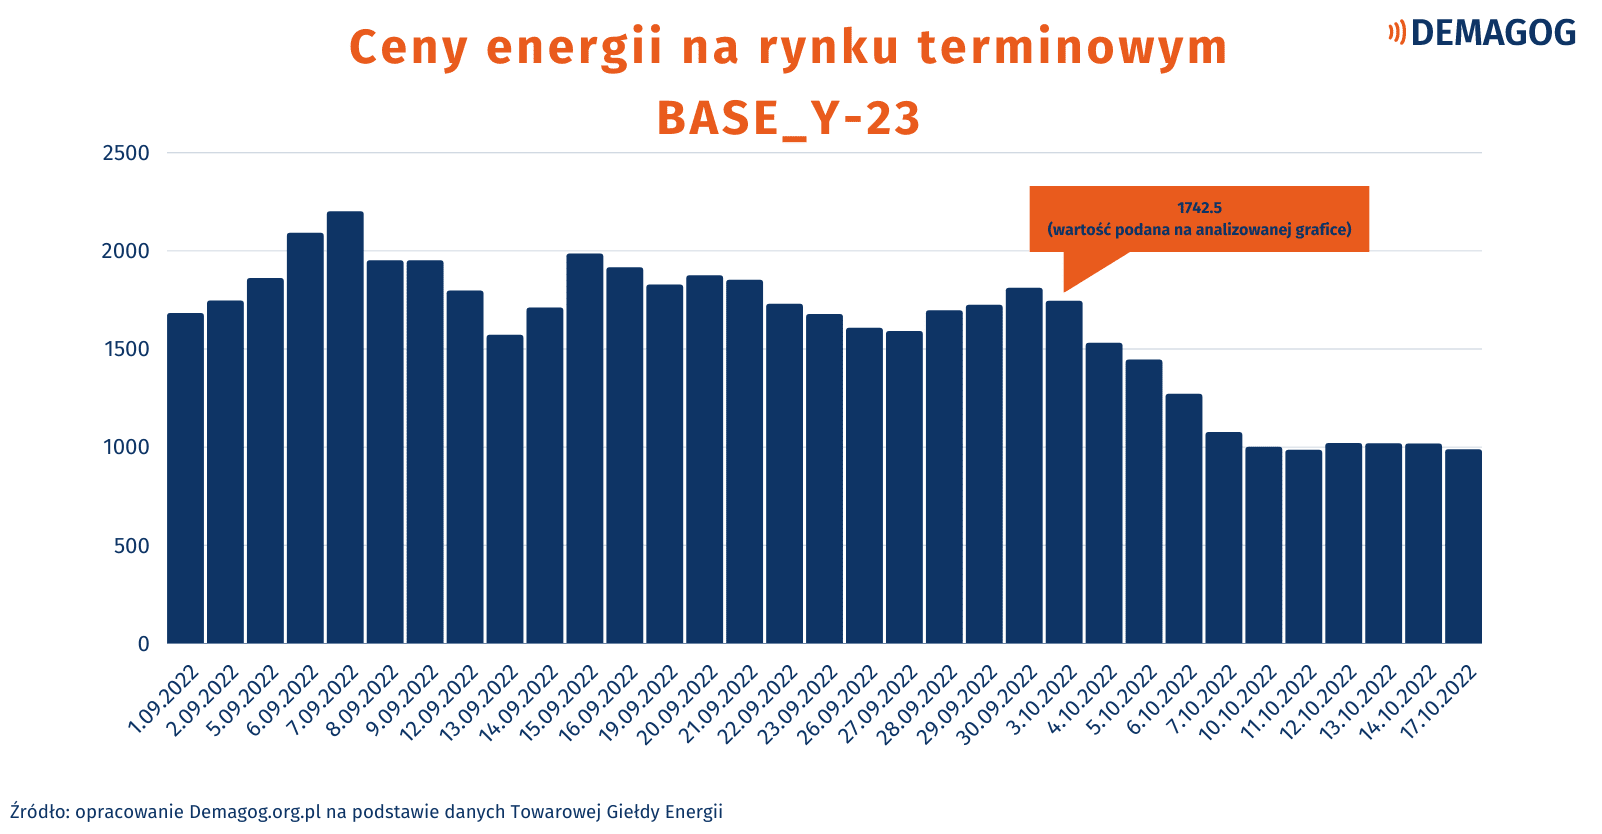 Wykres przedstawiający ceny energii na rynku terminowym (BASE_Y-23).